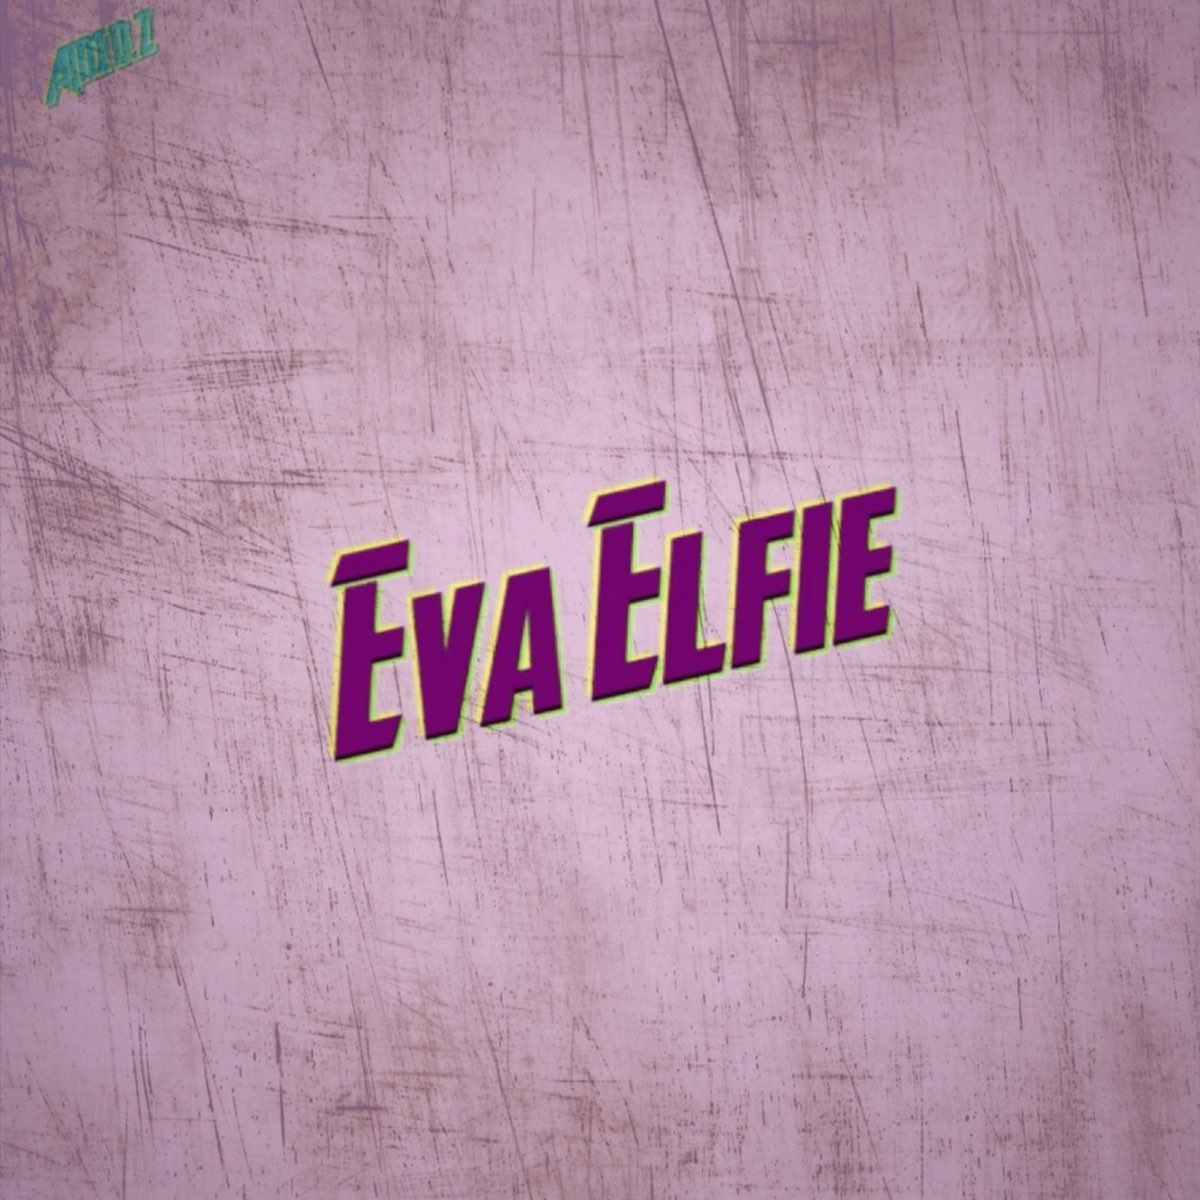 Evie elfie